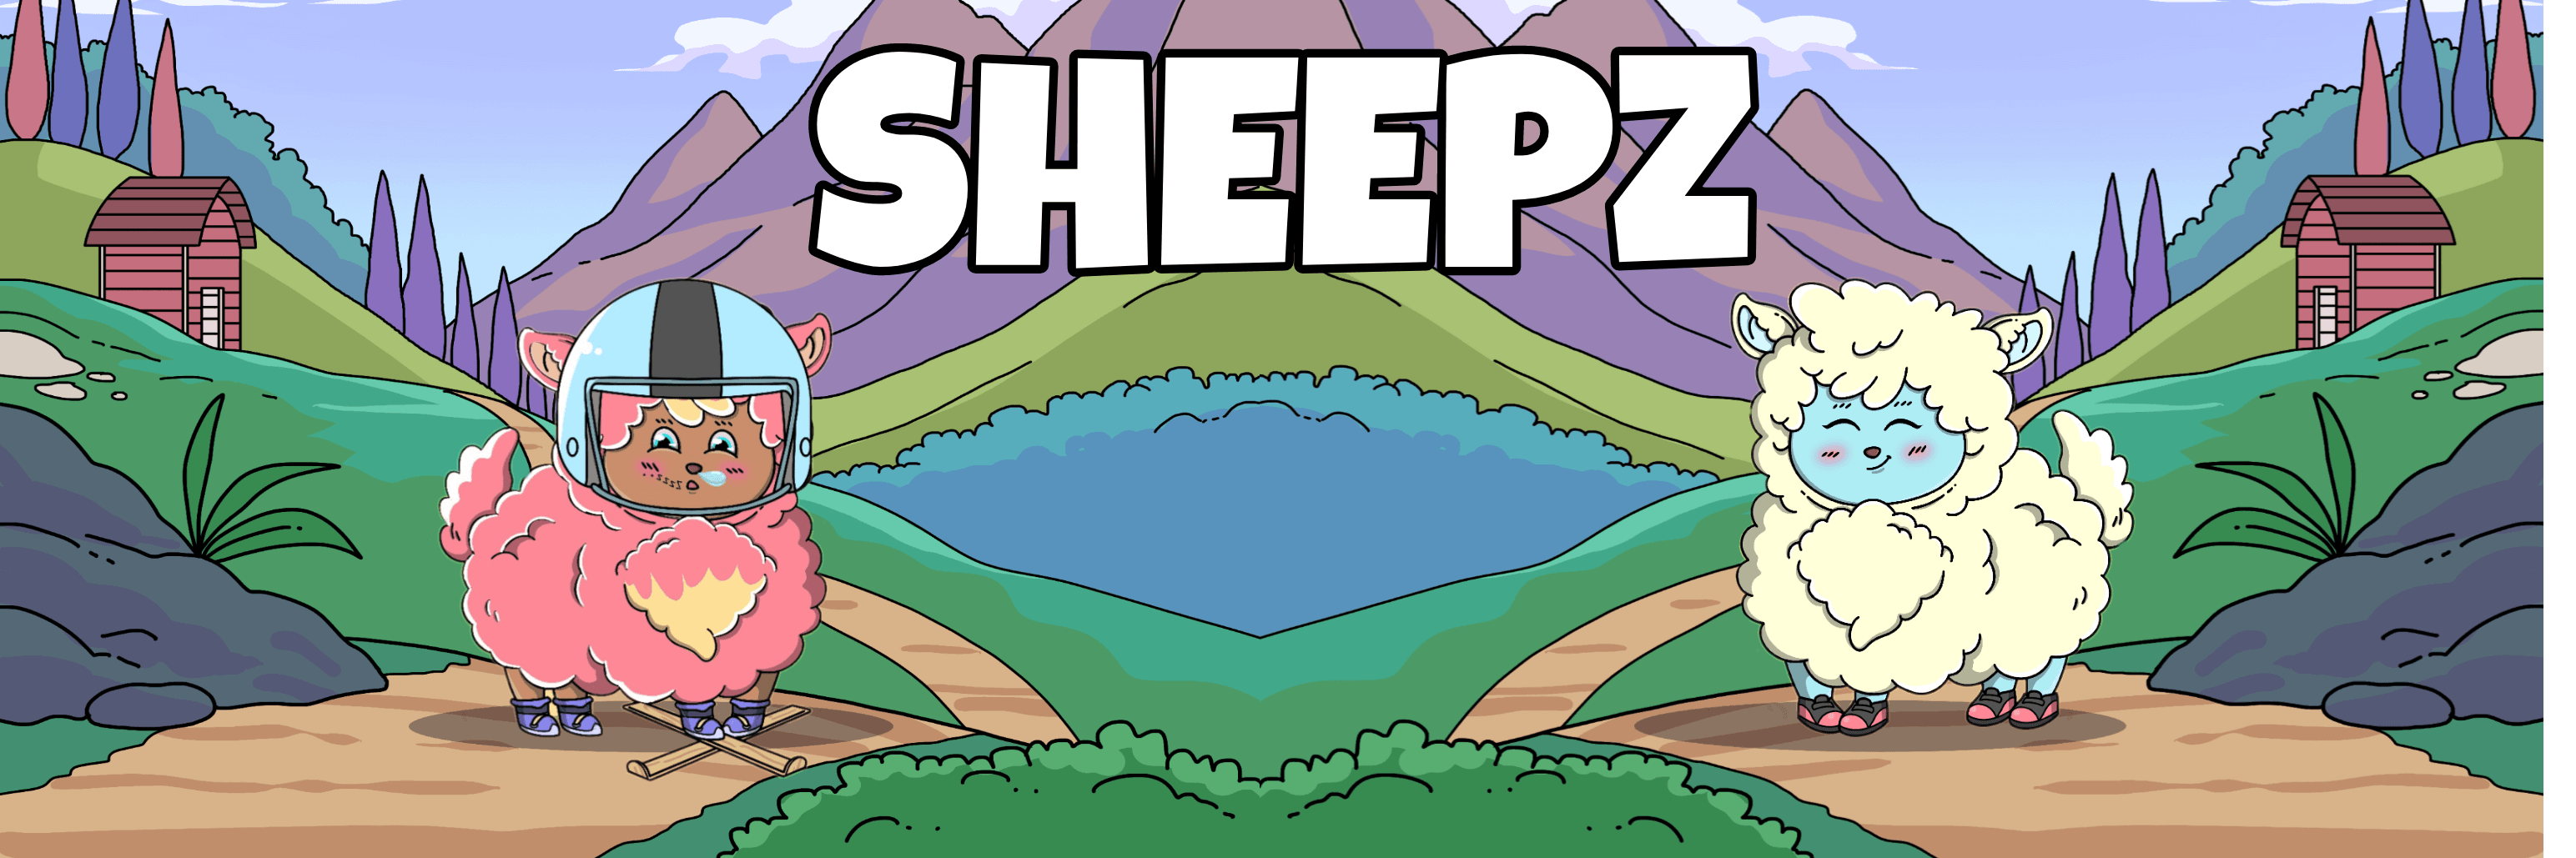 SHEEPZ_NFT バナー